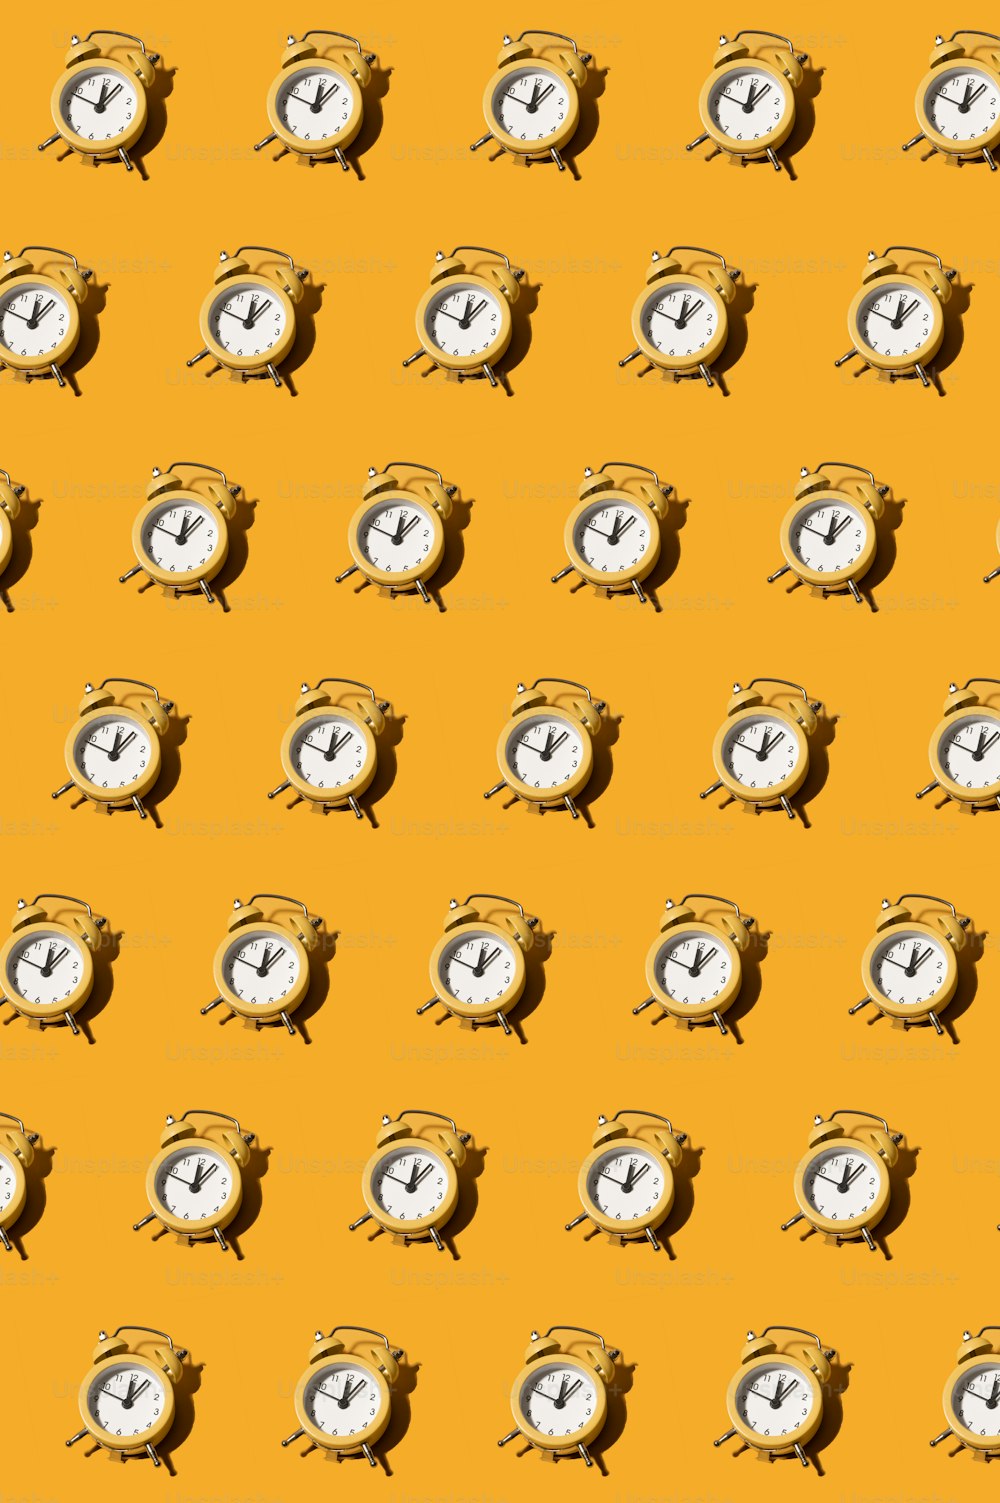 un patrón de relojes sobre un fondo amarillo